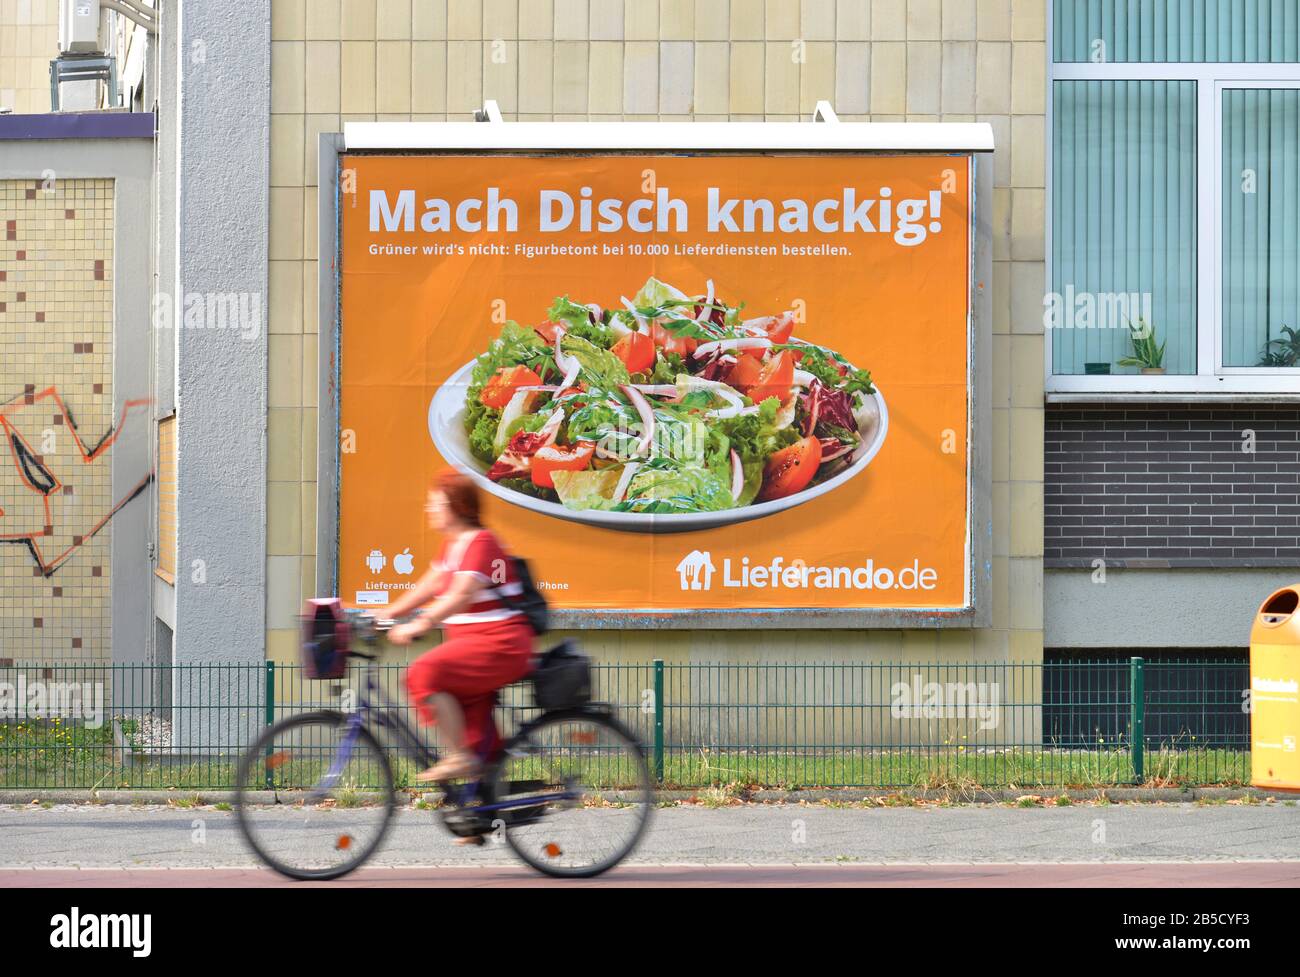 Plakat, Lieferando, Wilmersdorf, Berlin, Deutschland Stock Photo